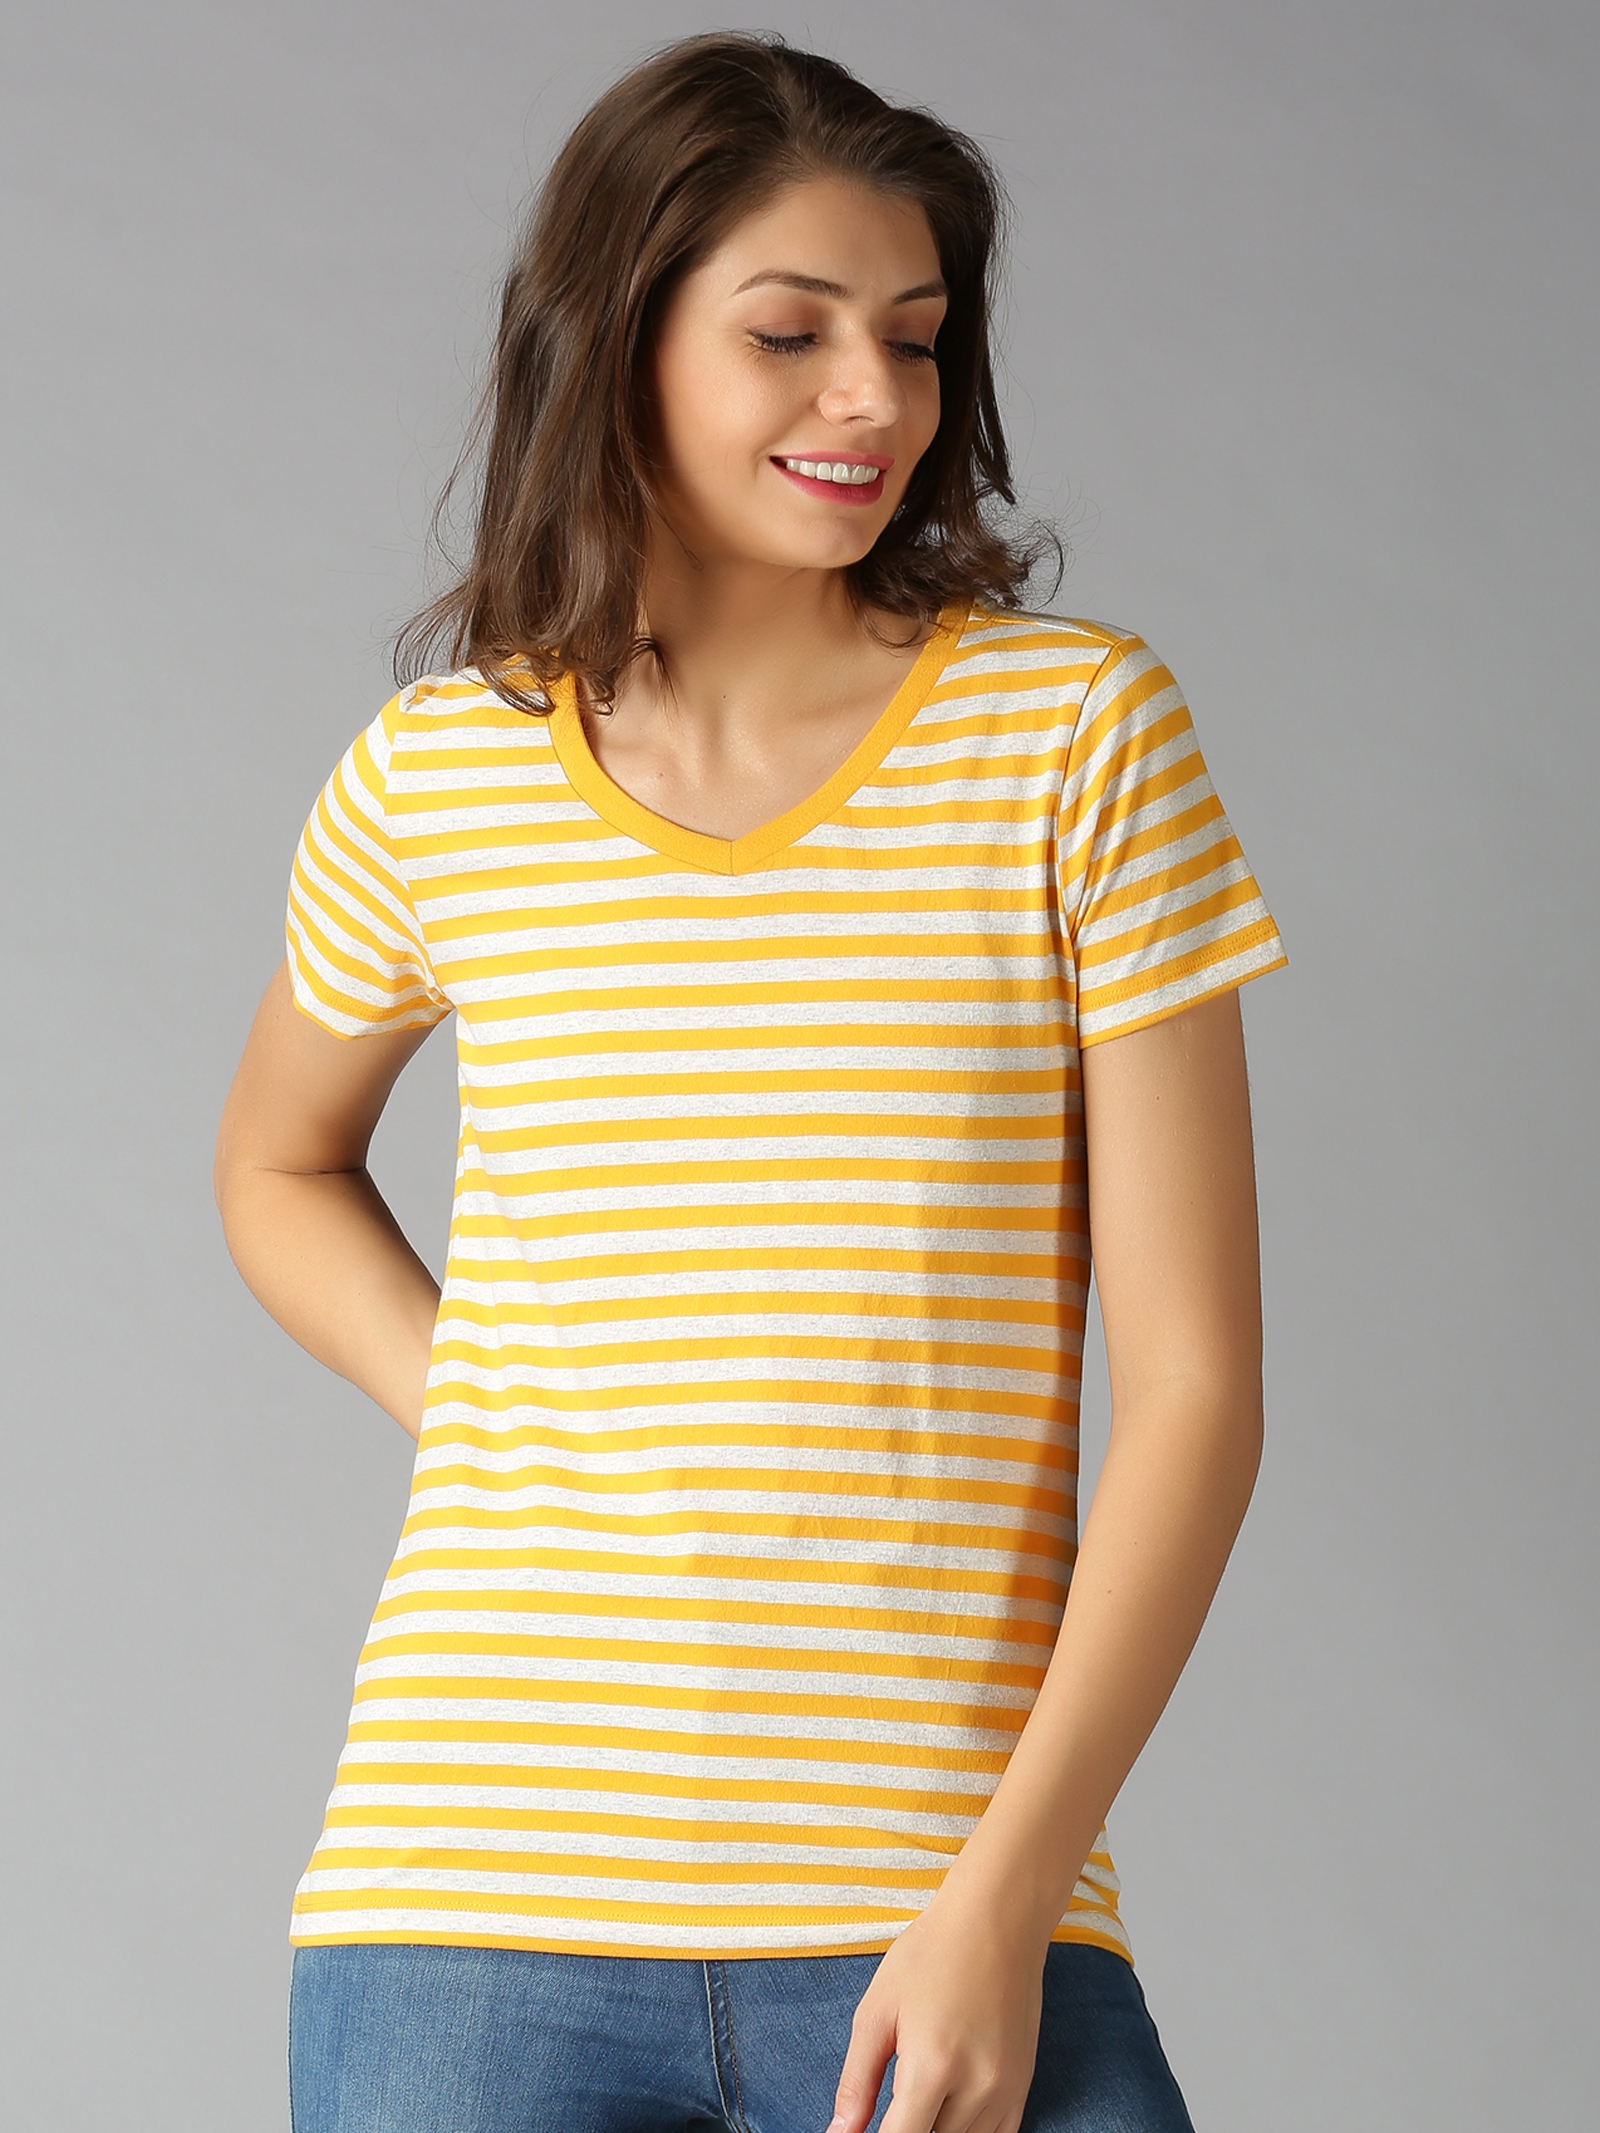 UrGear Women Yellow Striped Casual T-Shirt